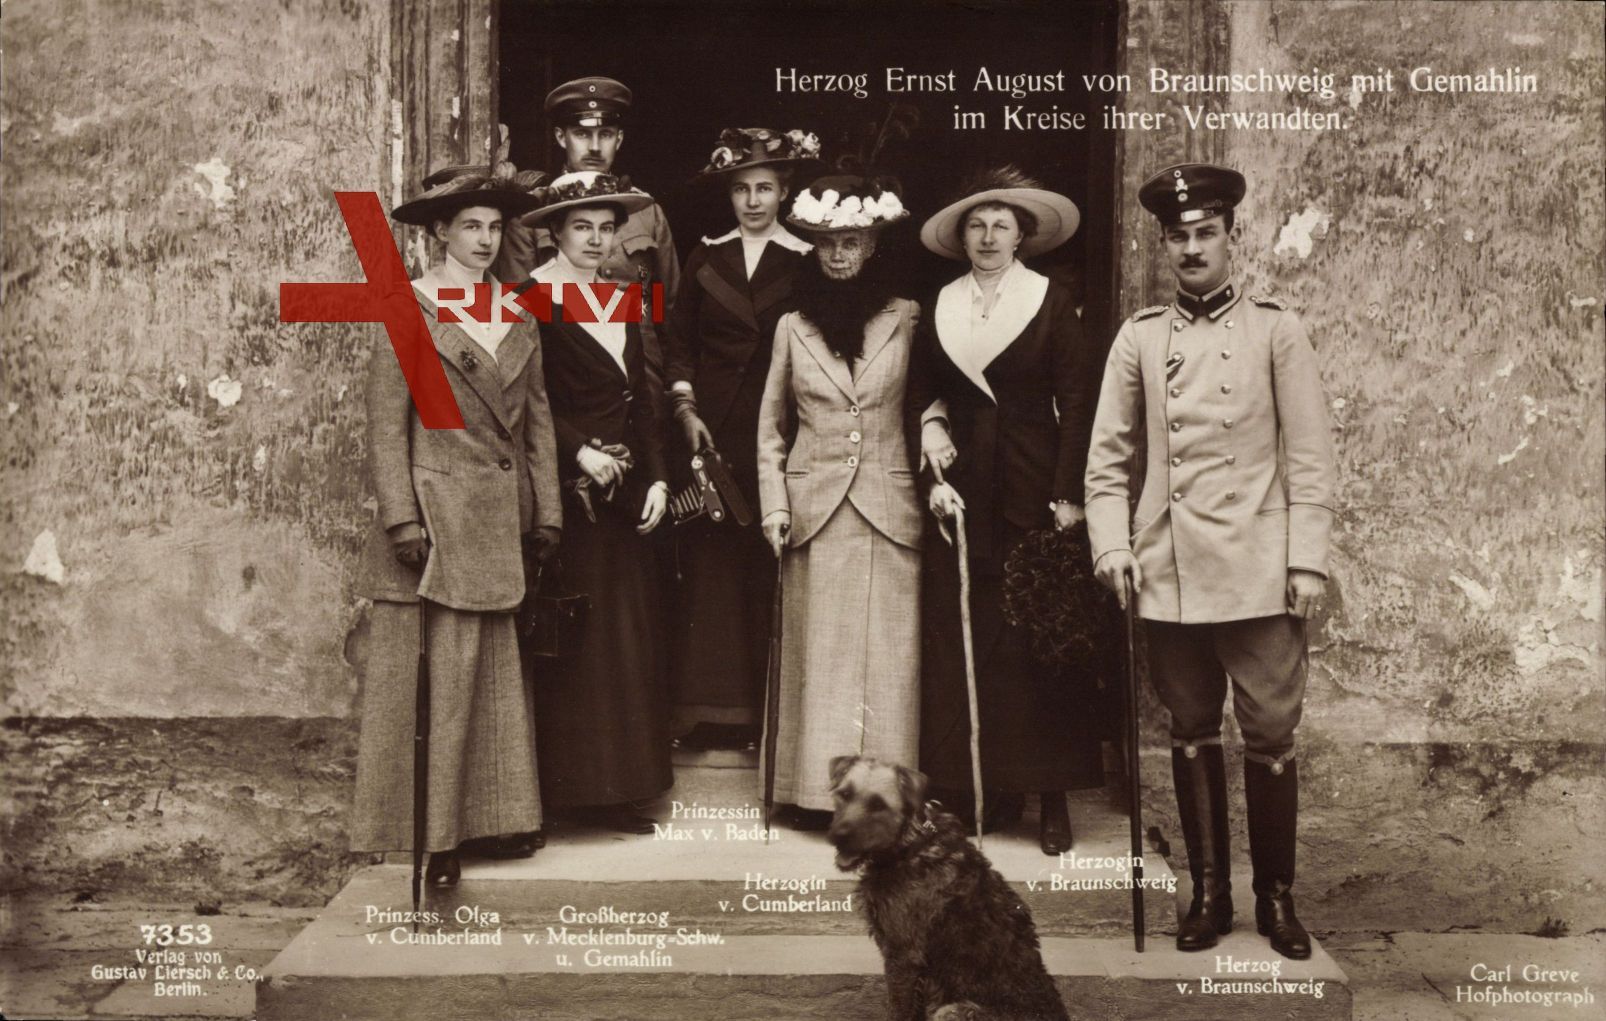 Herzog Ernst August, Viktoria Luise, Thyra von Cumberland, Olga, Max v Baden